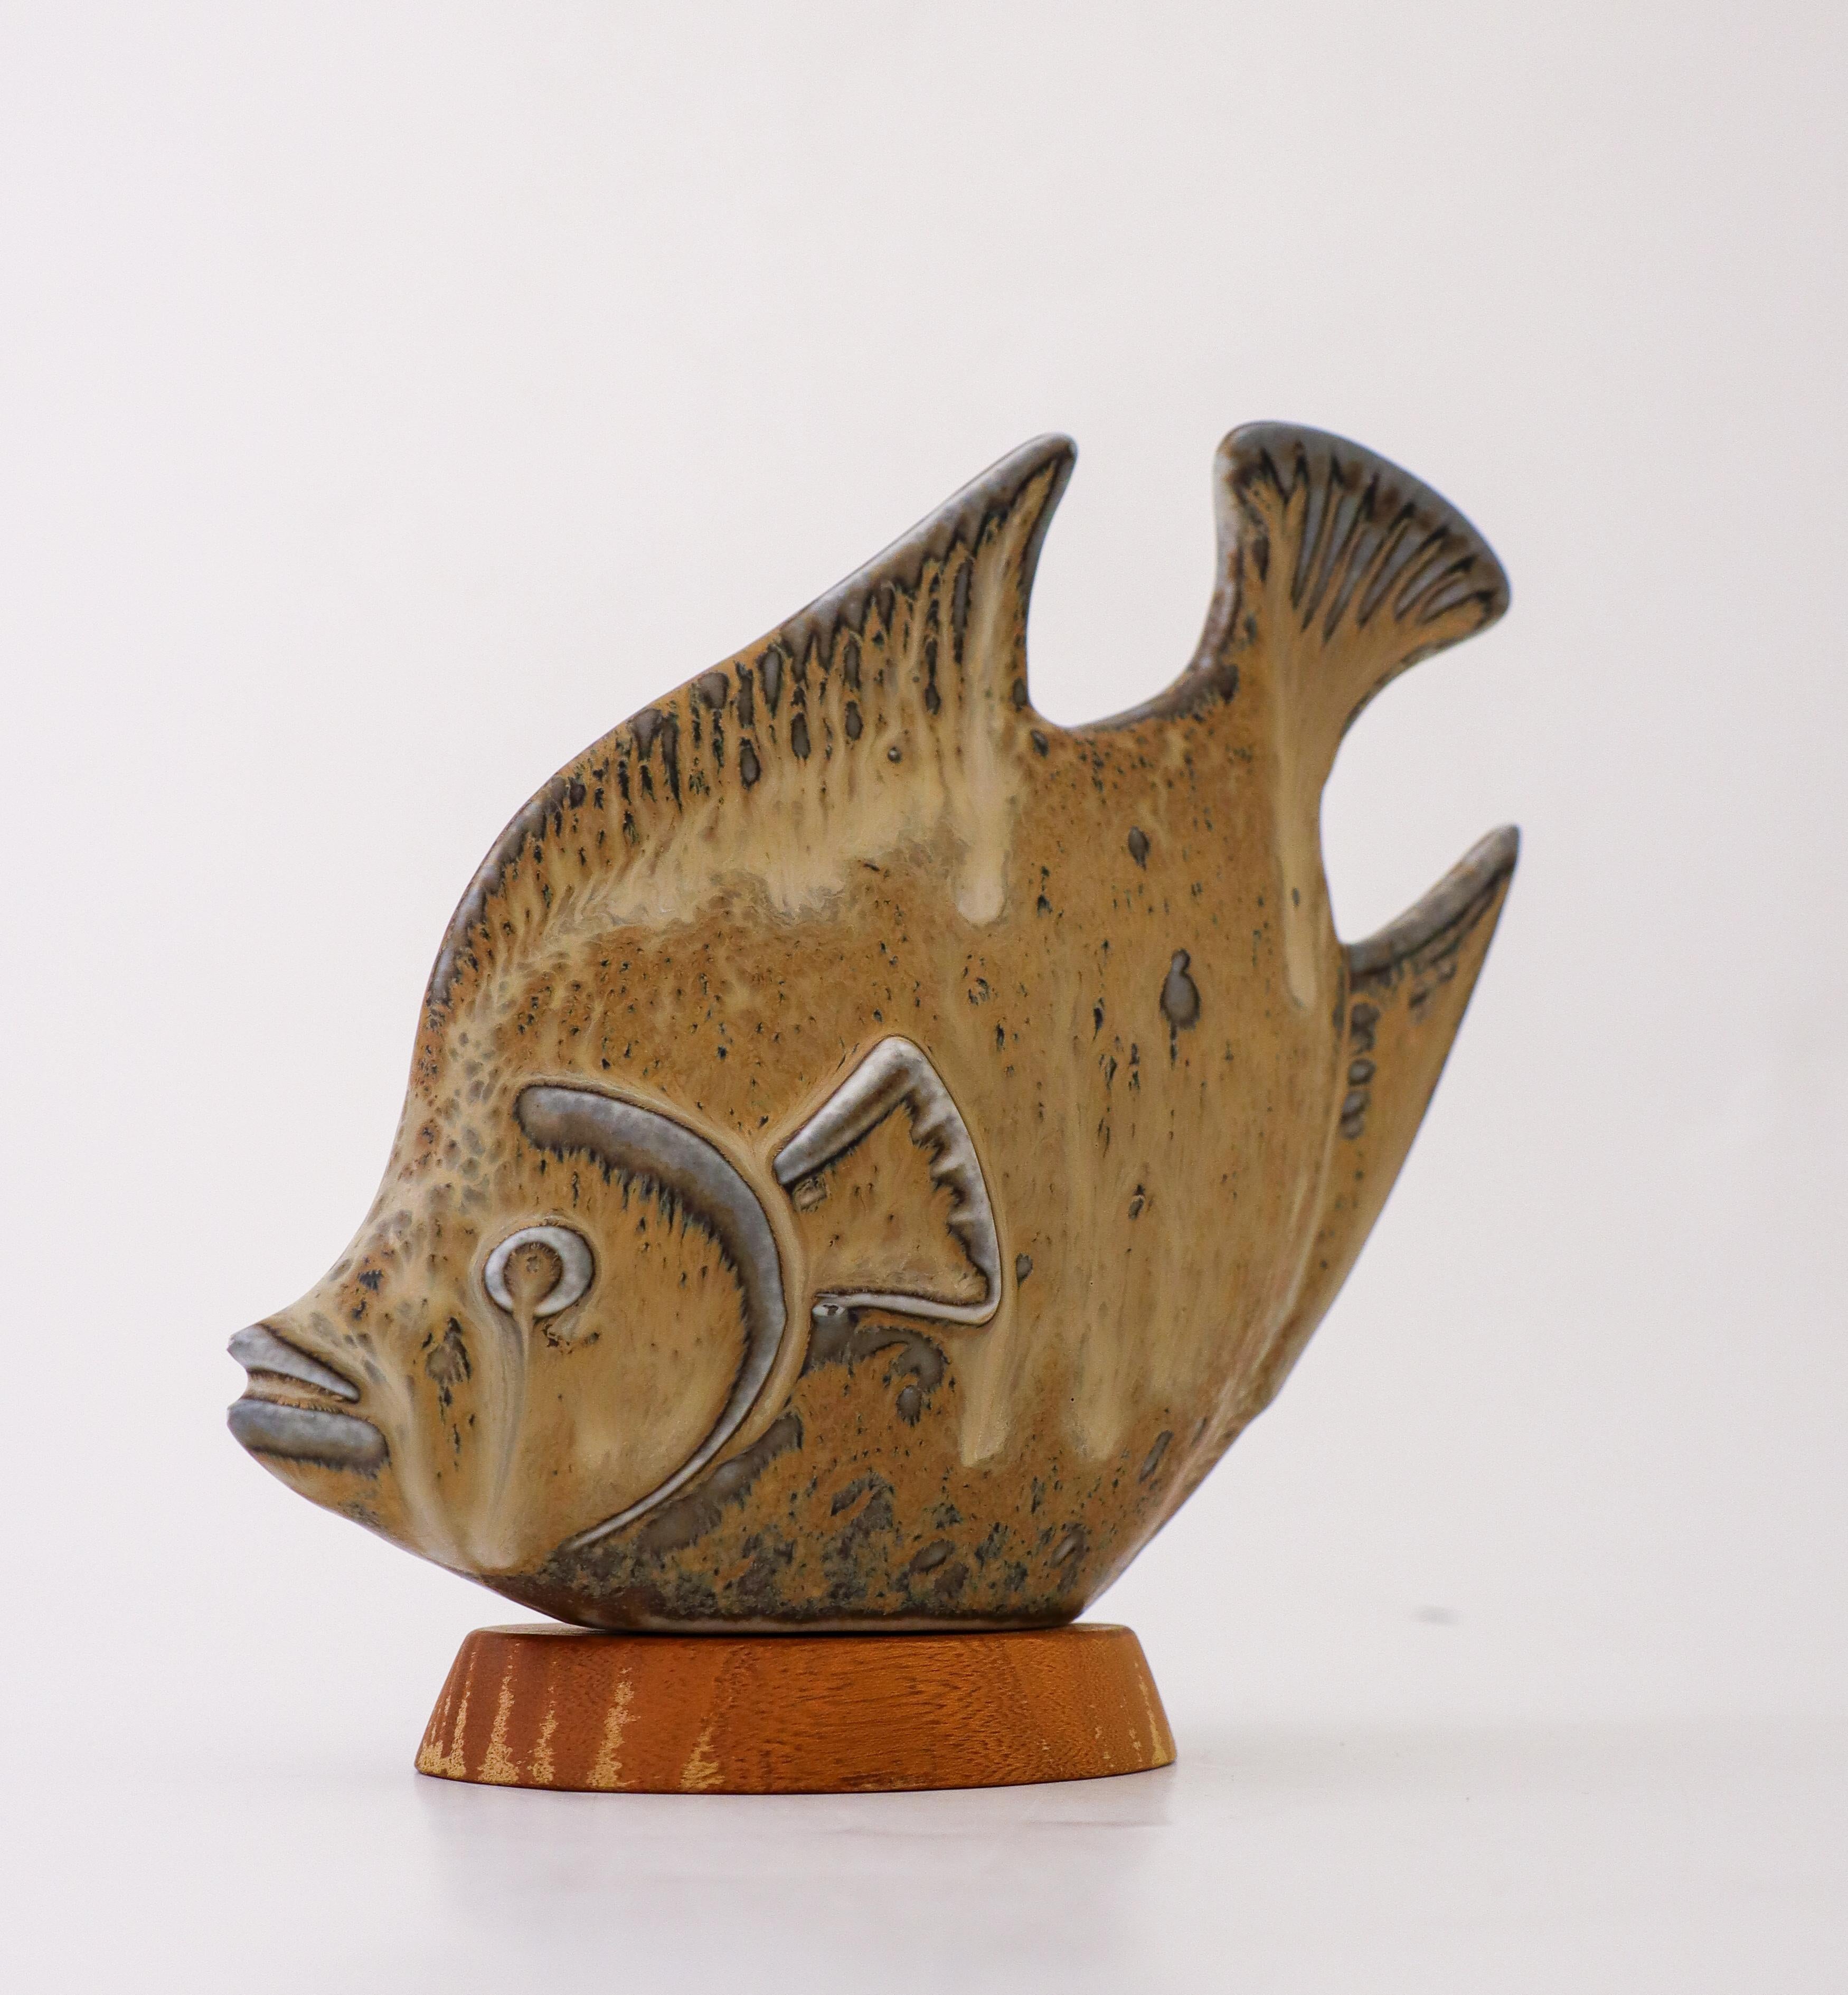 Une belle sculpture de poisson en céramique conçue par Gunnar Nylund chez Rörstrand. Il mesure 16,5 cm de haut. Il est en excellent état, à l'exception de quelques éclats sur la bouche du poisson. 

Gunnar Nylund est né à Paris en 1904 de parents